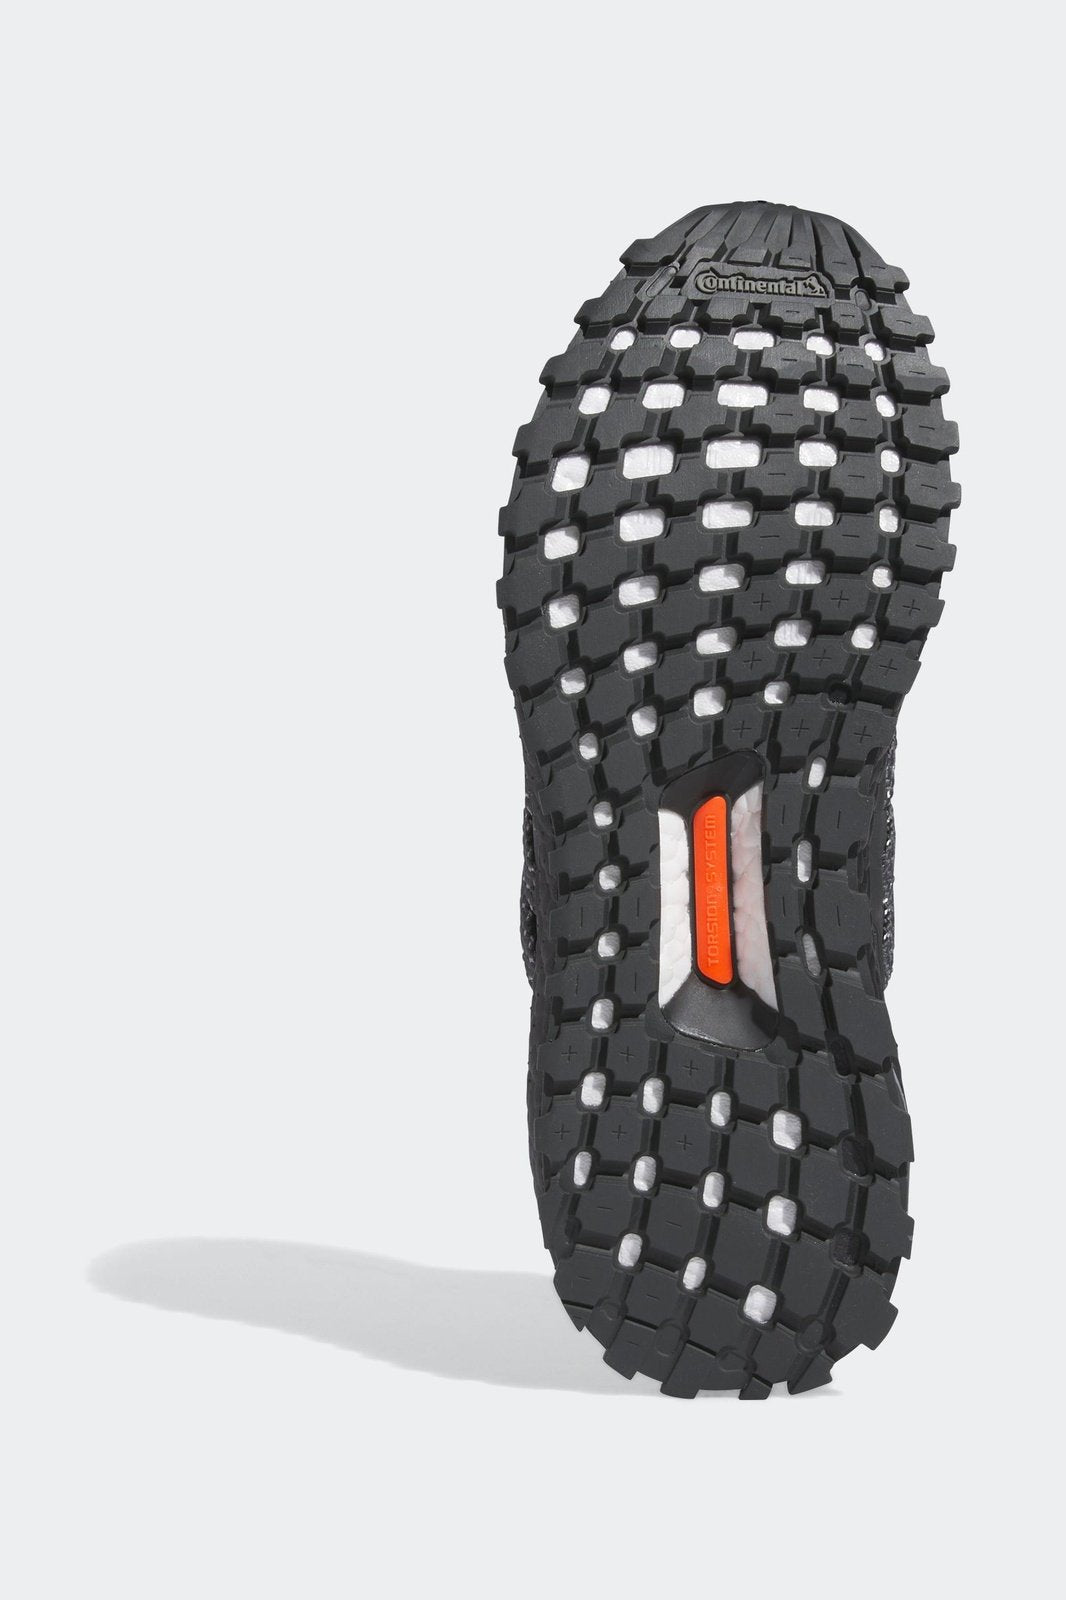 נעלי ספורט לגברים ULTRABOOST 1.0 ATR בצבע שחור